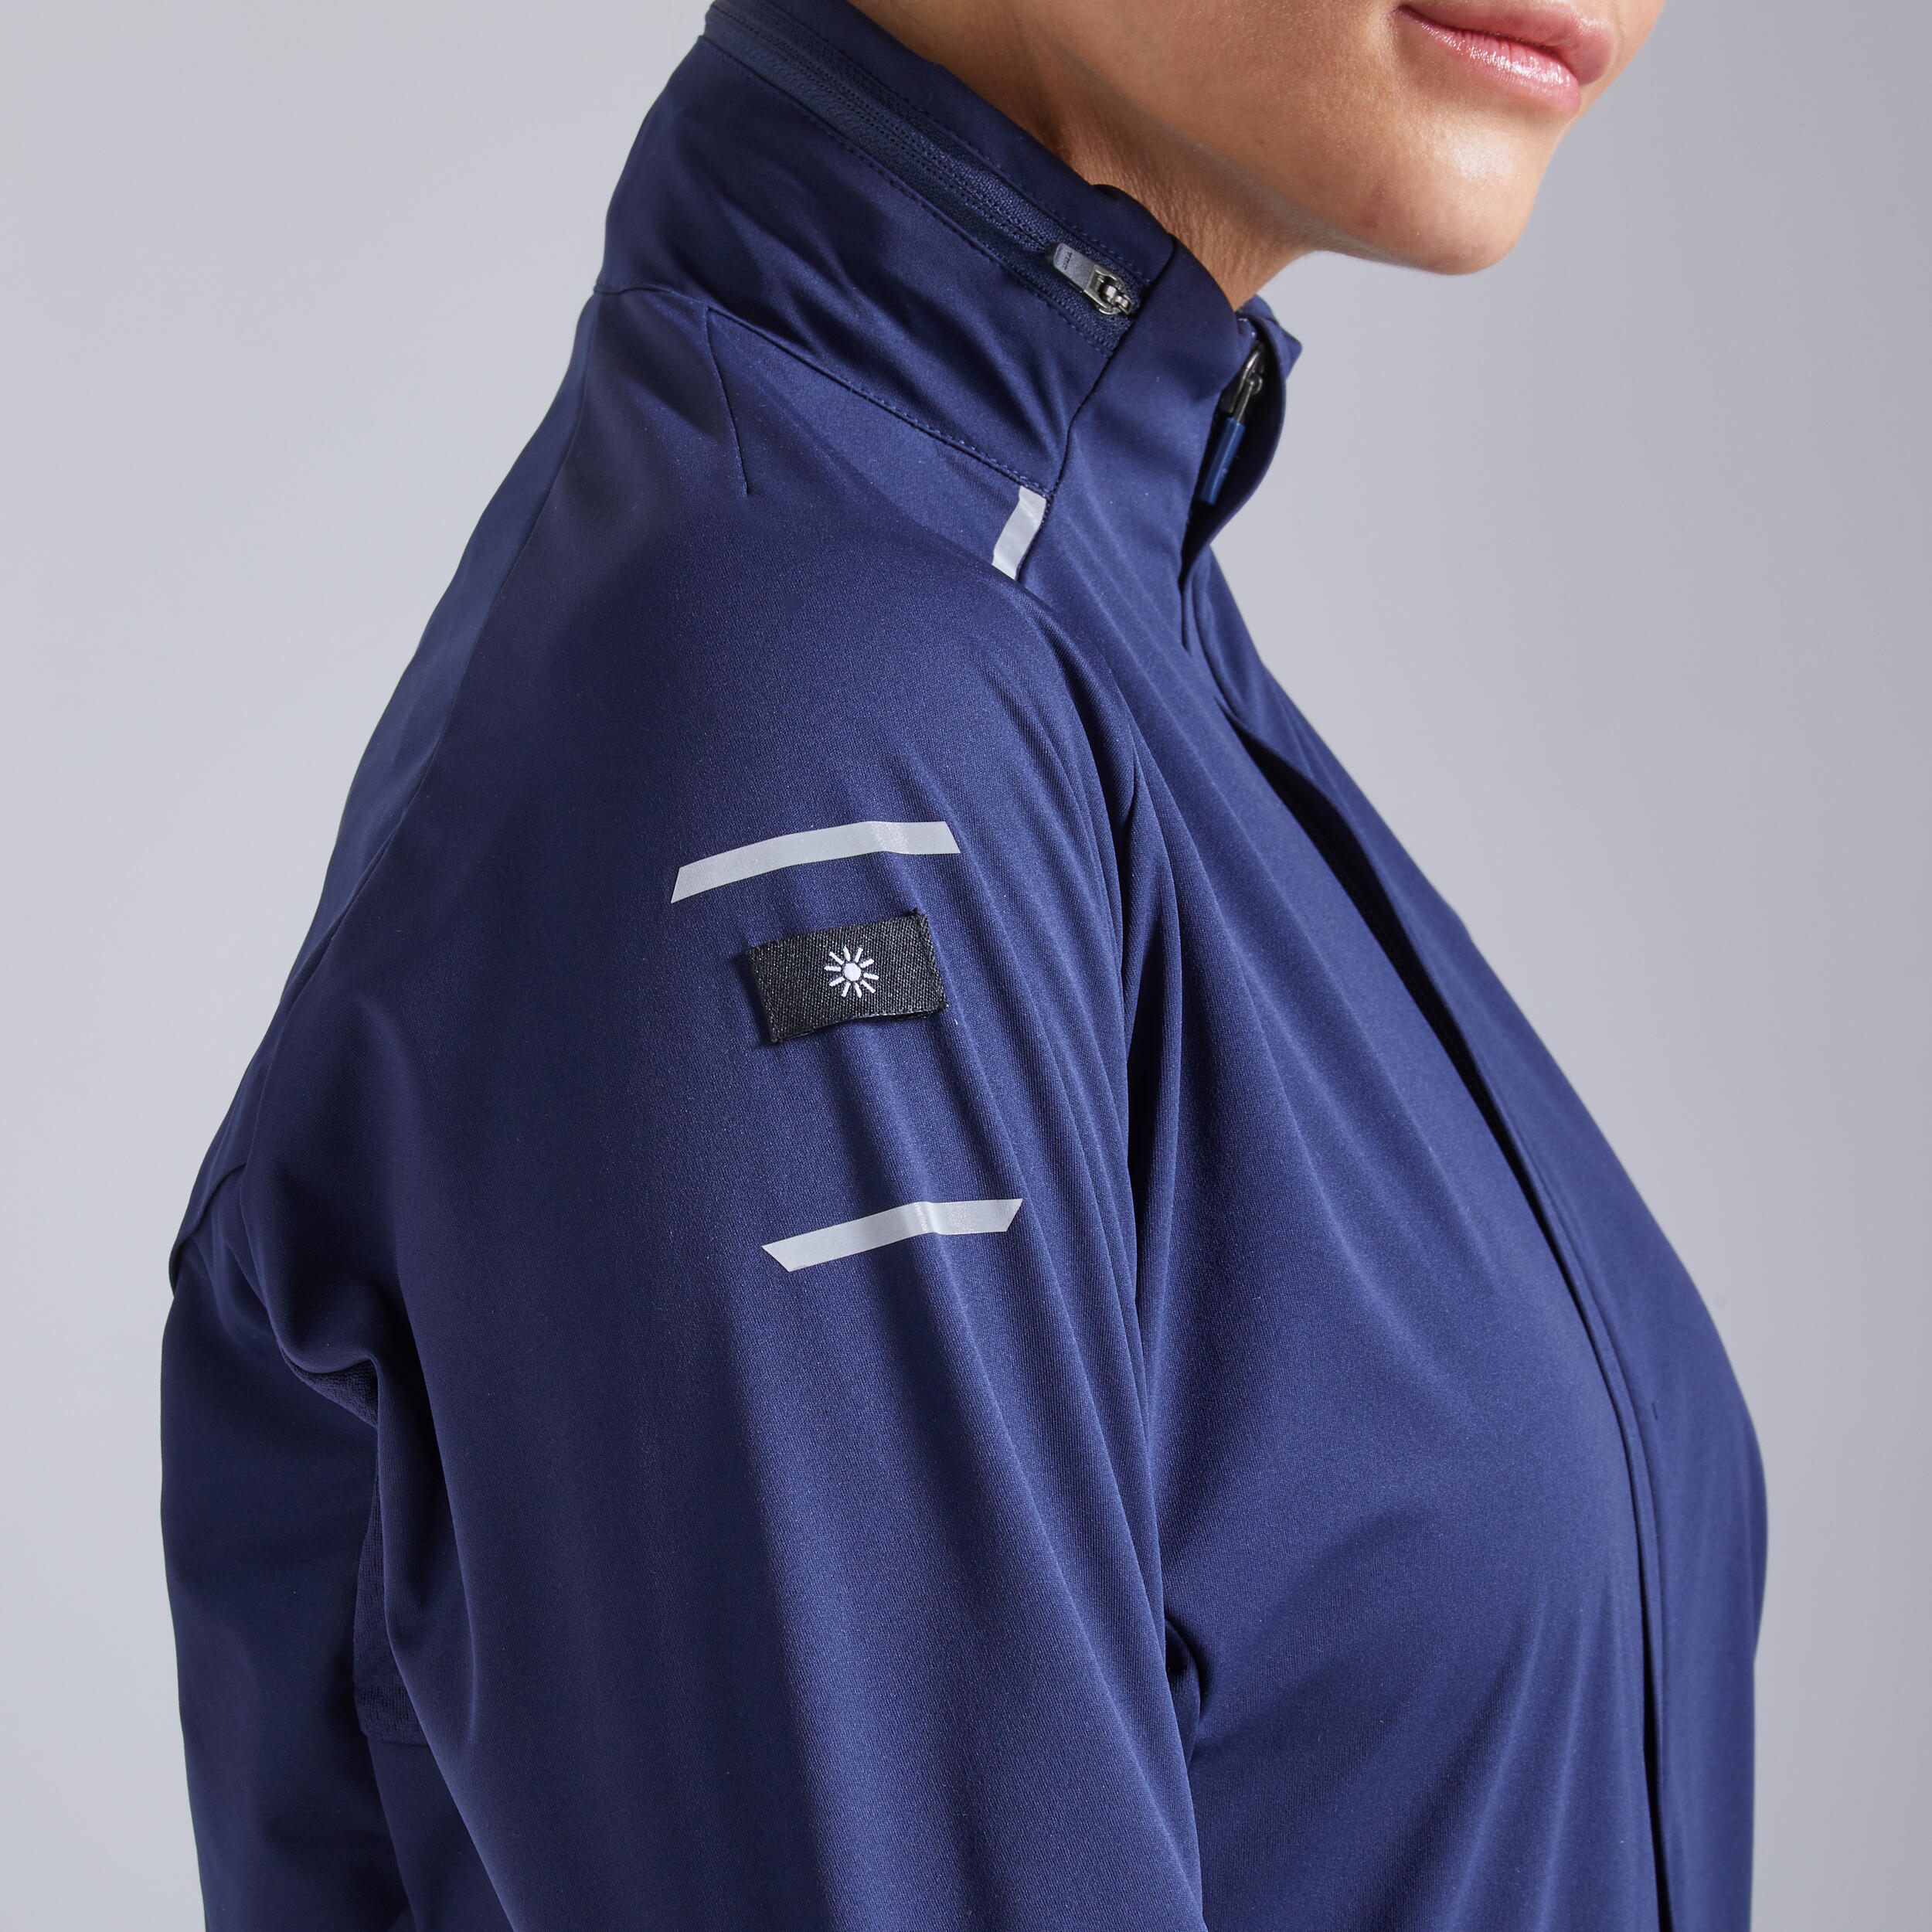 Kiprun Warm Regul Women's Winter Running Windproof Water Repellent Jacket - navy 9/12